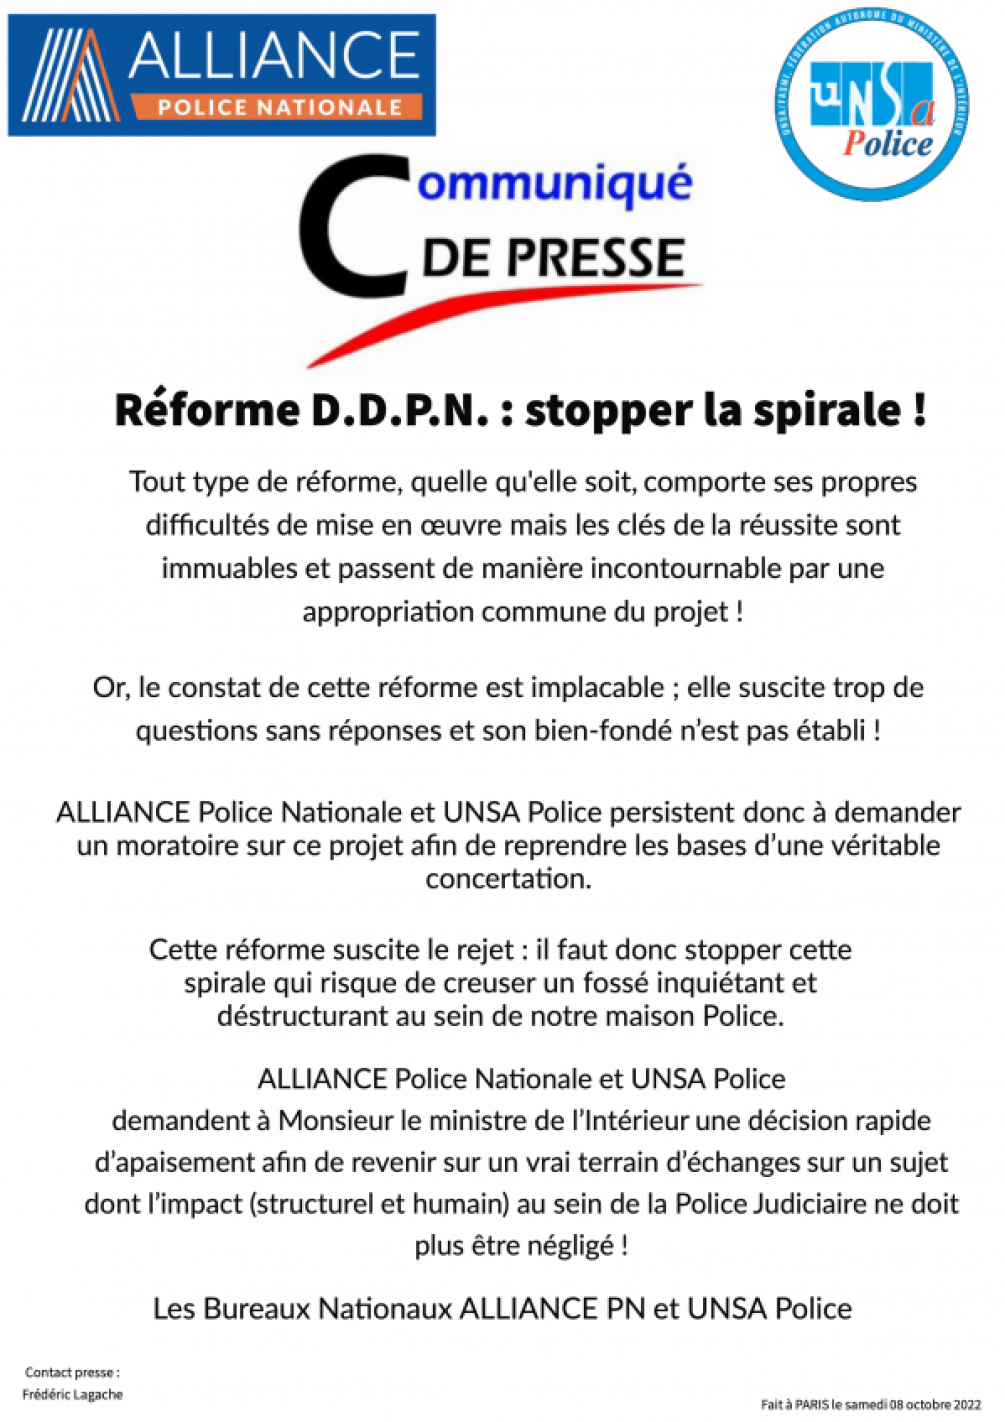 Communiqué de presse : Réforme DDPN 